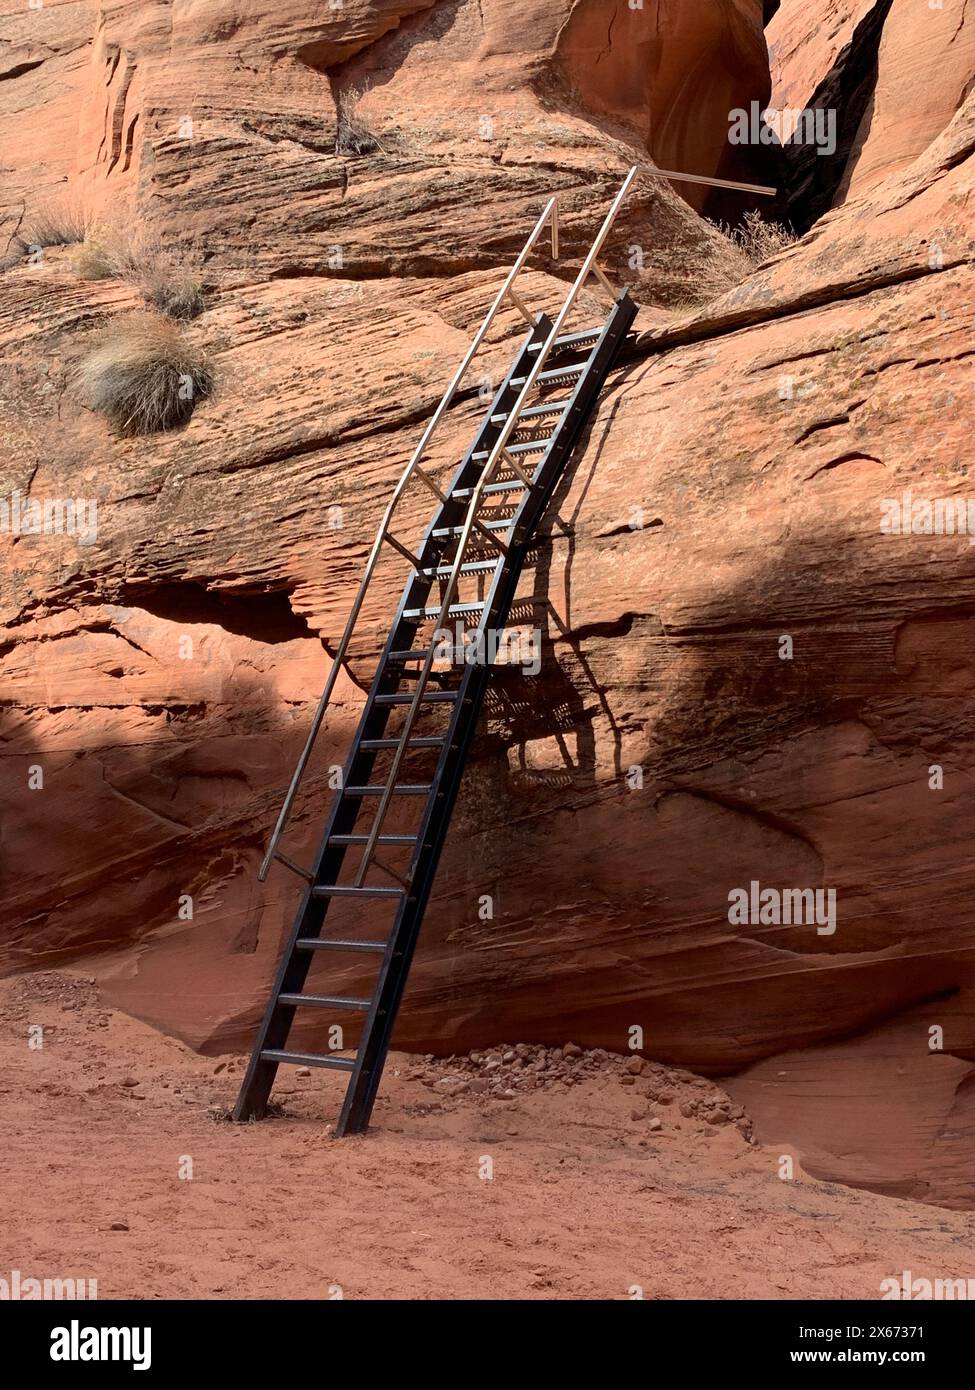 Die Navajo haben eine Leiter an der Seite eines Slot Canyon montiert, um Zugang zu den erstaunlichen Kammern auf der oberen Ebene zu ermöglichen, in denen wellenförmige Farben und Streifen ama sind Stockfoto